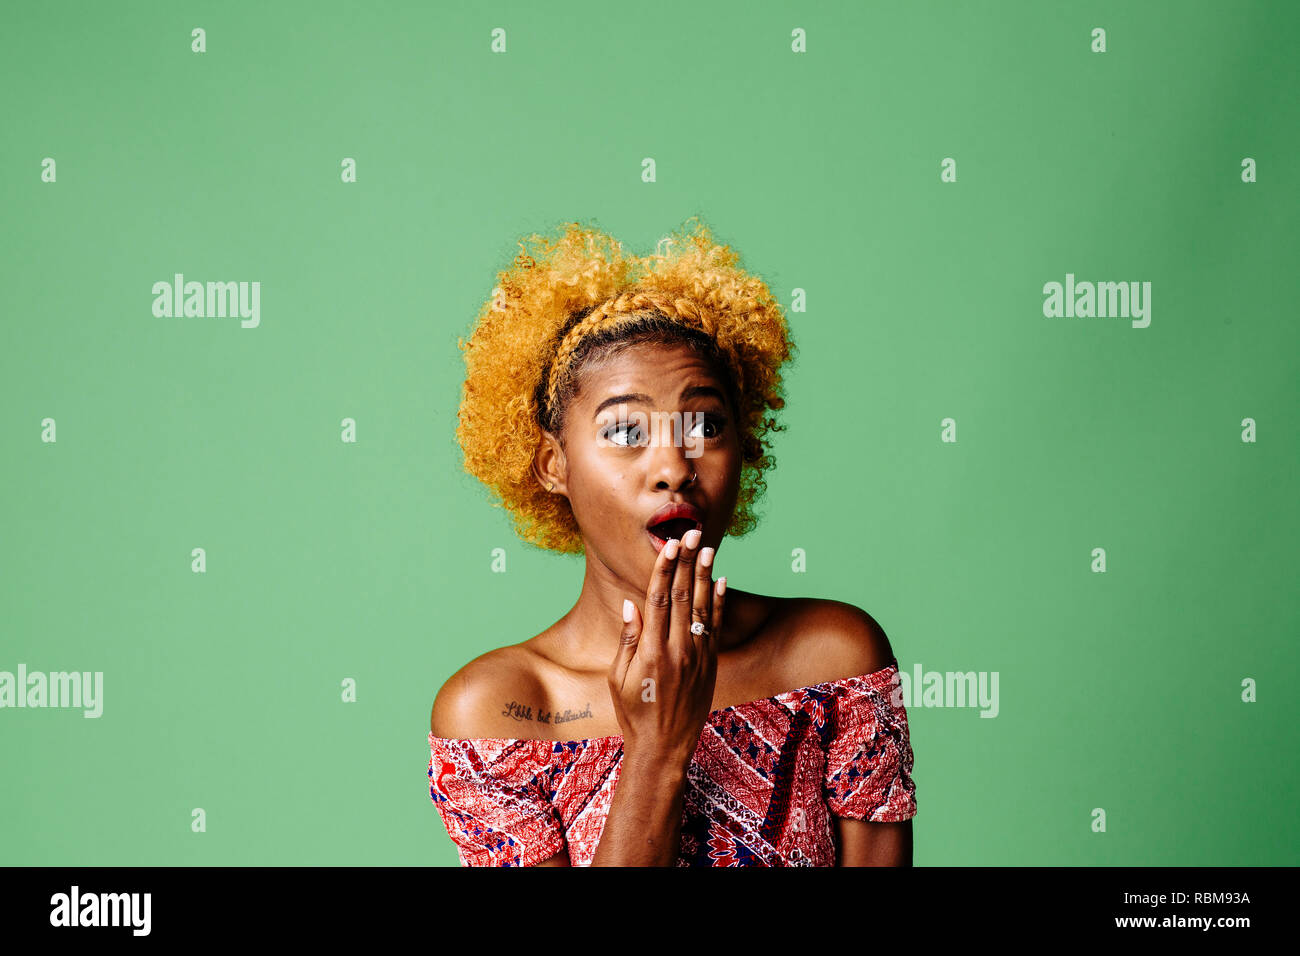 Junge Frau mit einem entsetzten Ausdruck suchen nach etwas, auf grüner studio Hintergrund isoliert Stockfoto